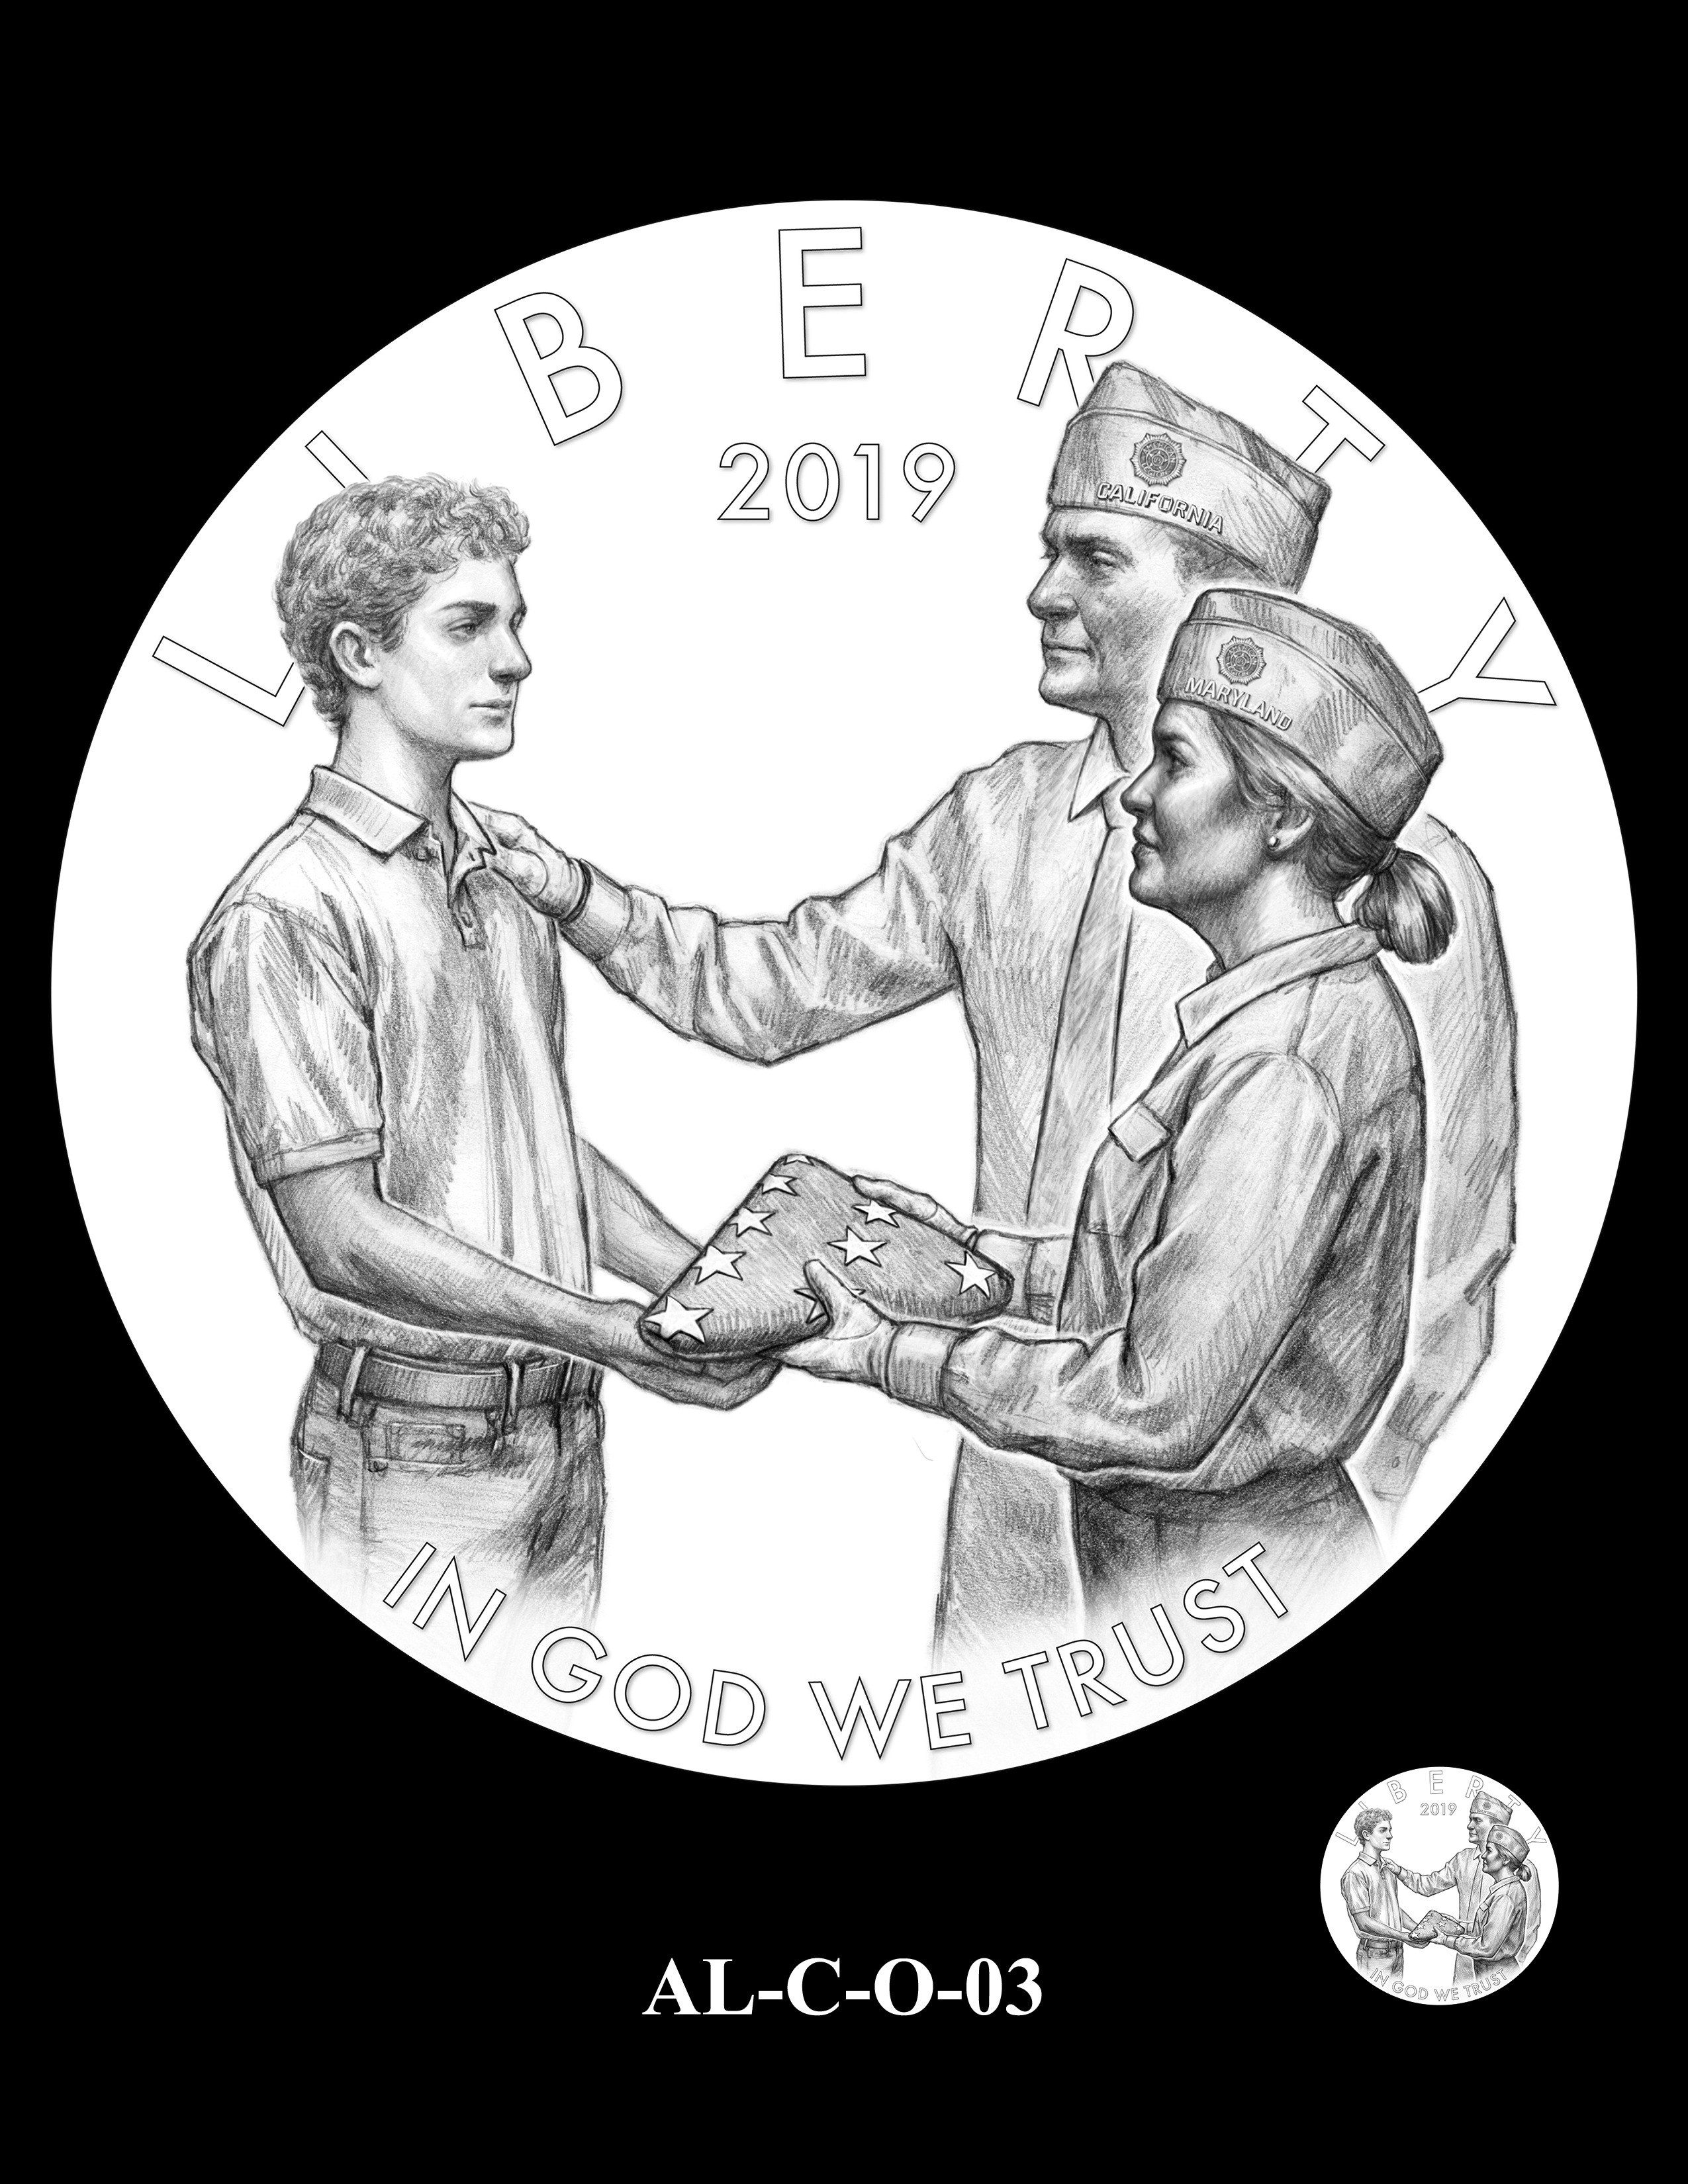 AL-C-O-03 -- 2019 American Legion 100th Anniversary Commemorative Coin Program - Clad Obverse